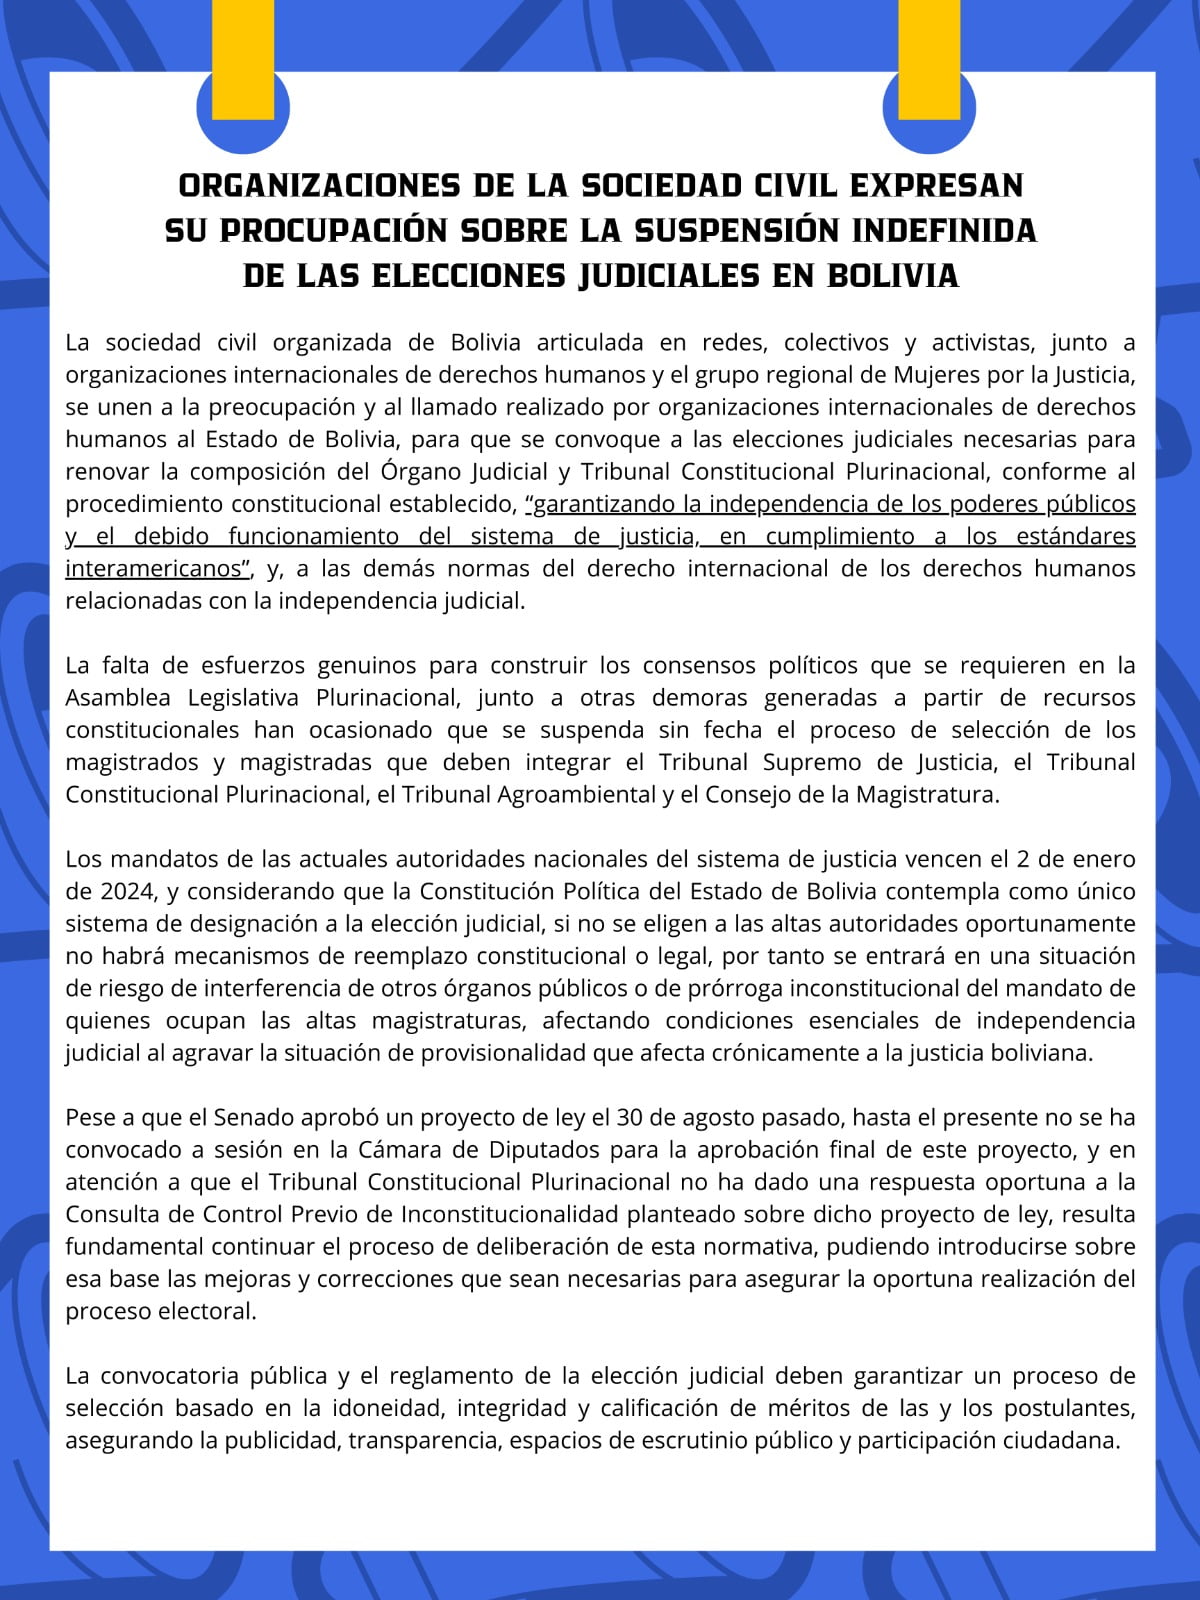 ORGANIZACIONES DE LA SOCIEDAD CIVIL EXPRESAN SU PREOCUPACIÓN SOBRE LA SUSPENSIÓN INDEFINIDA DE LAS ELECCIONES JUDICIALES EN BOLIVIA